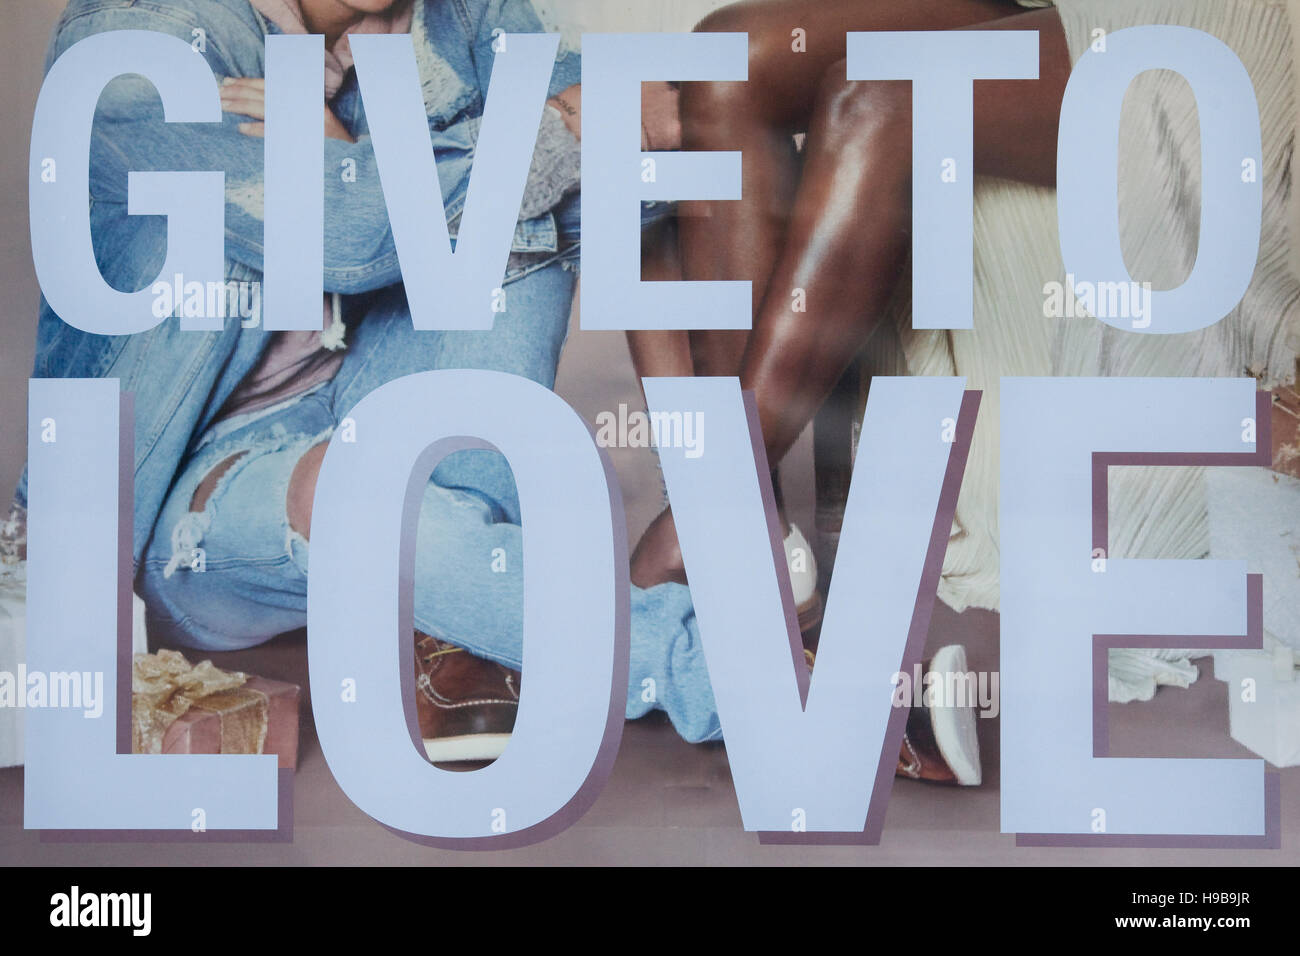 Schaufenster mit den Worten "Gib um zu lieben" Stockfoto